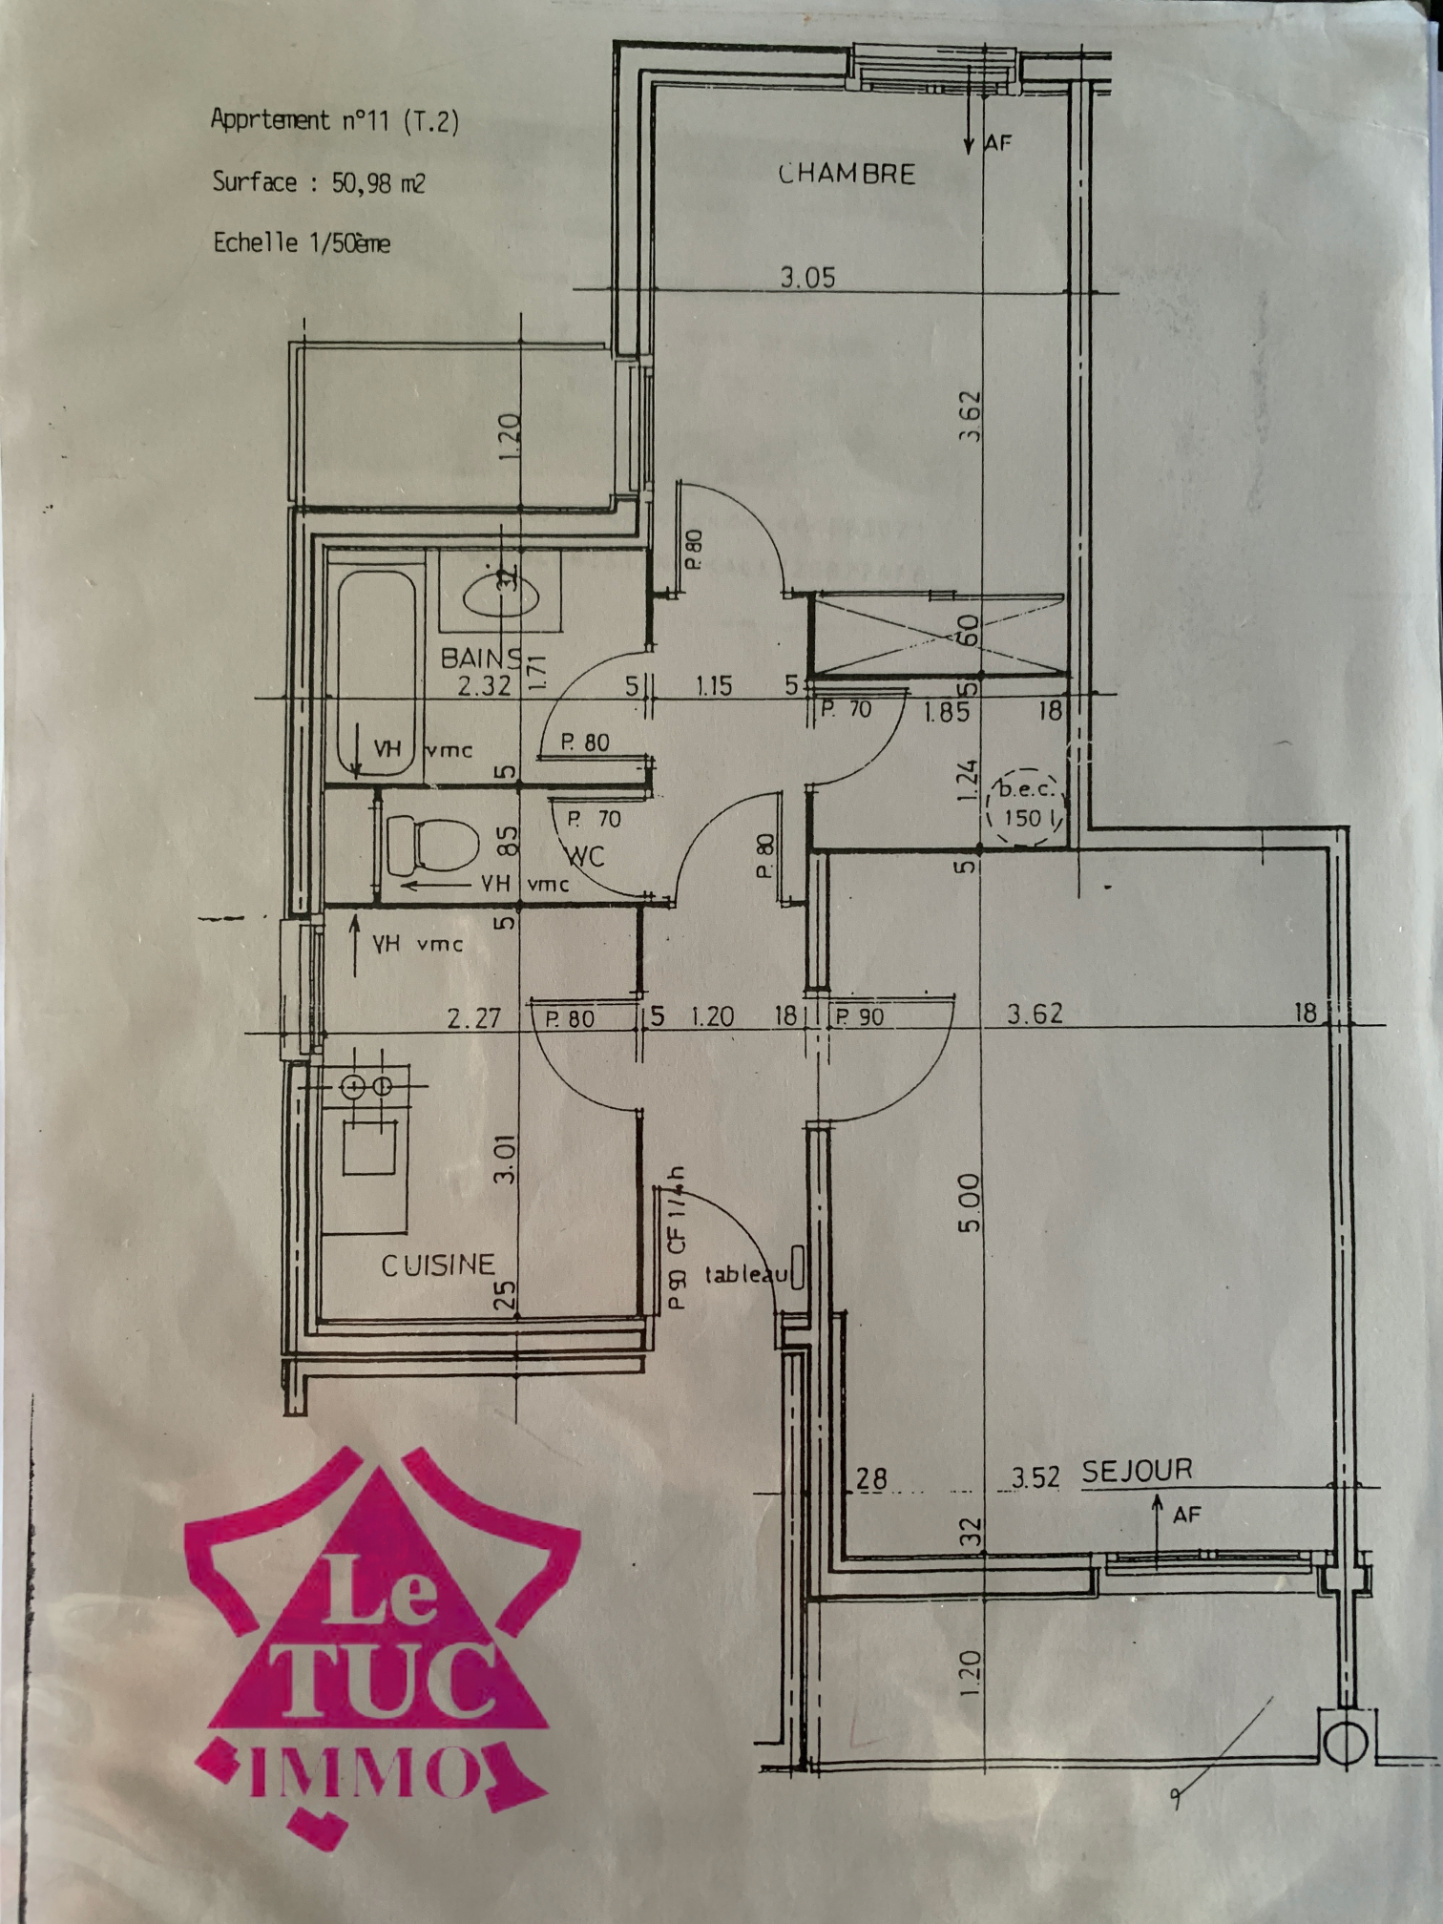 Appartement - 51 m2 - 2 pièces